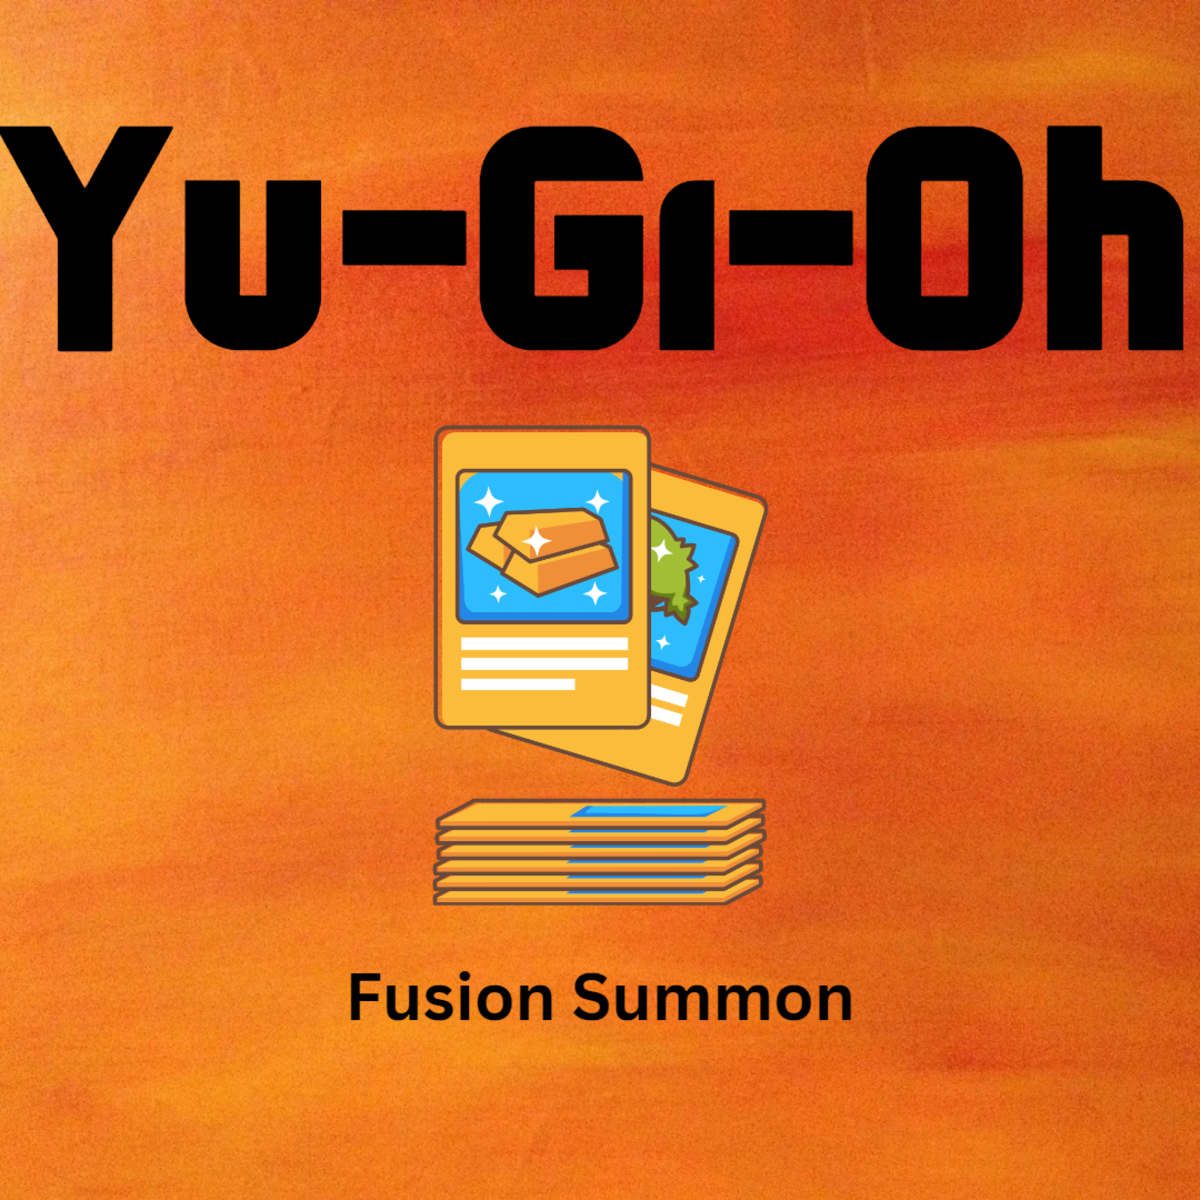 Fusion summon